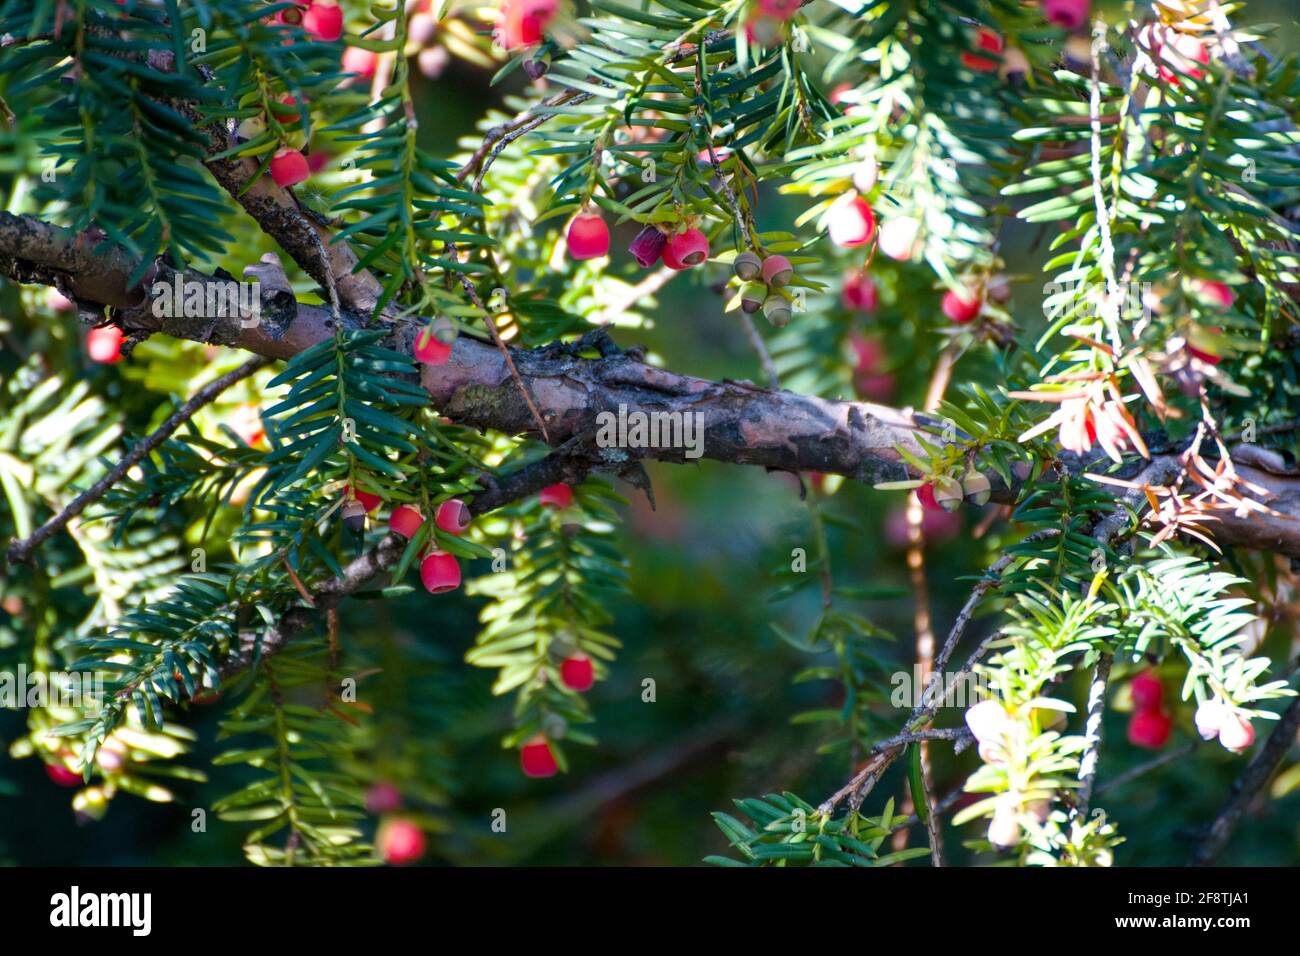 Taxus cuspidata, il tasso giapponese o tasso di diffusione, un albero di conifere. Belle bacche rosse al sole, chiamate arils con una tazza rossa carnosa. Foto Stock